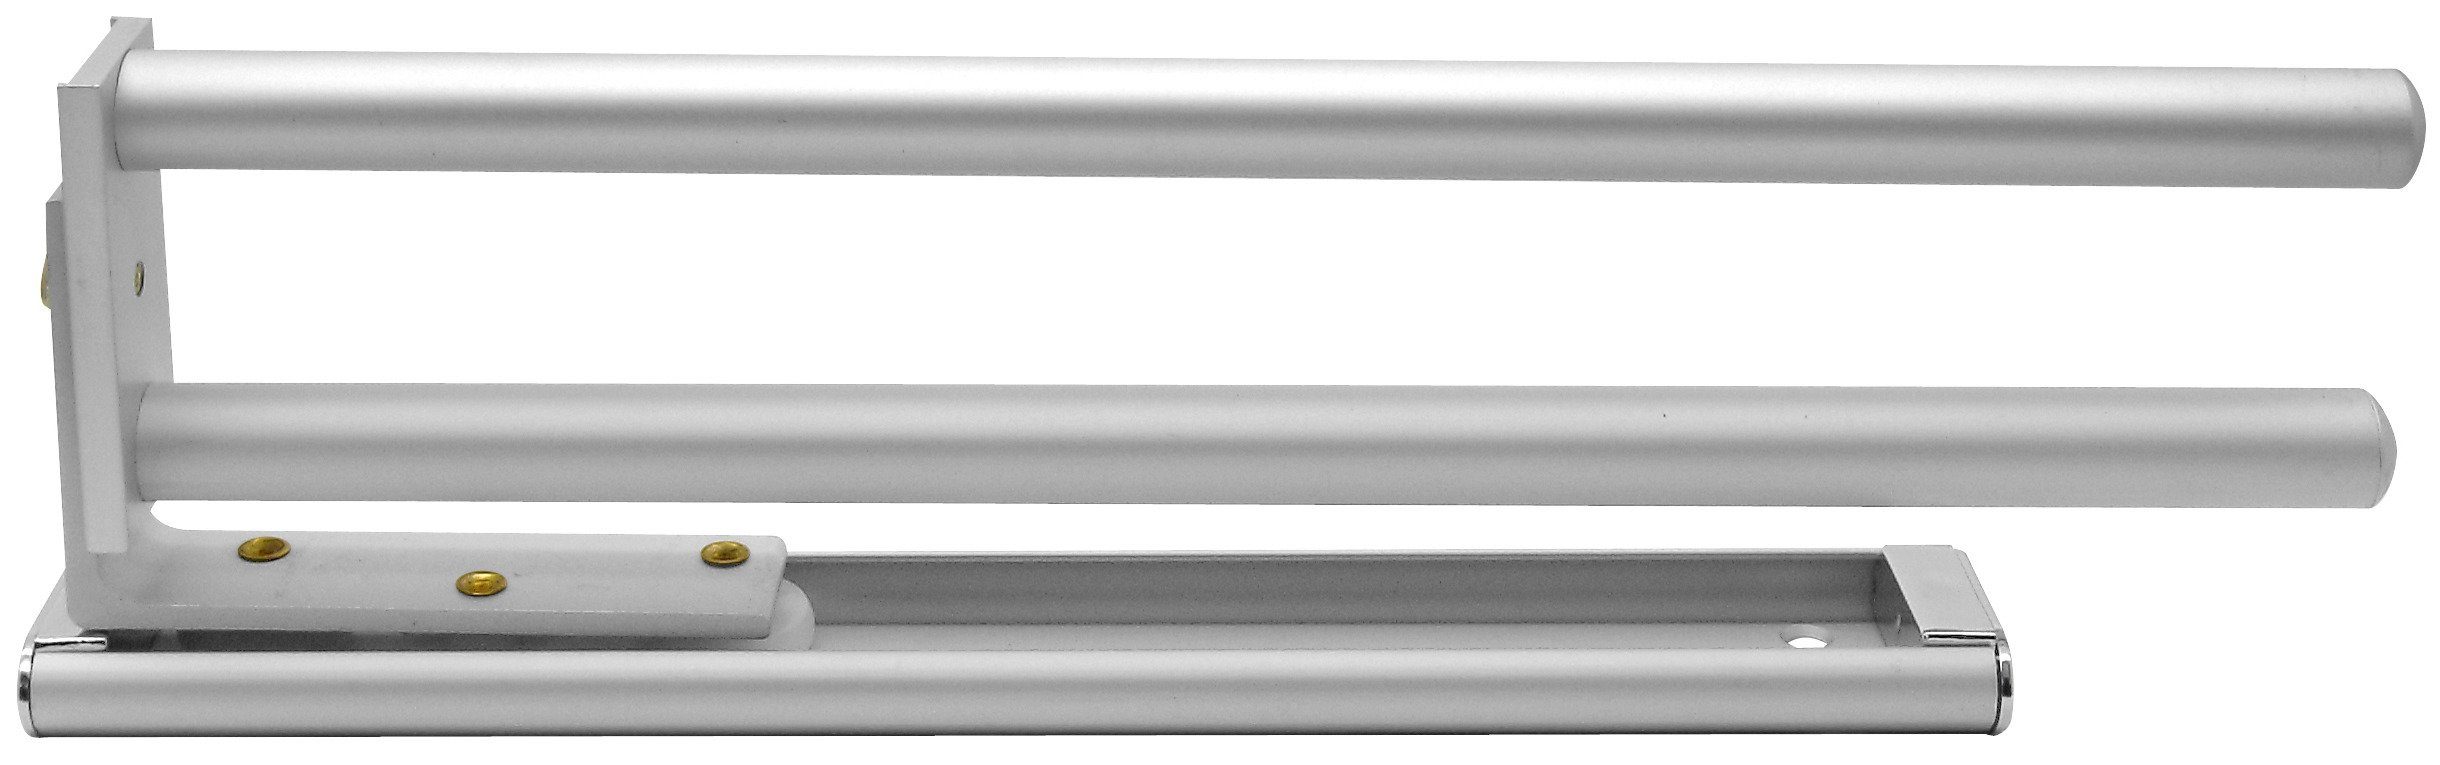 FACKELMANN Handtuchhalter Aluminium, Ausziehbar bis 46 cm